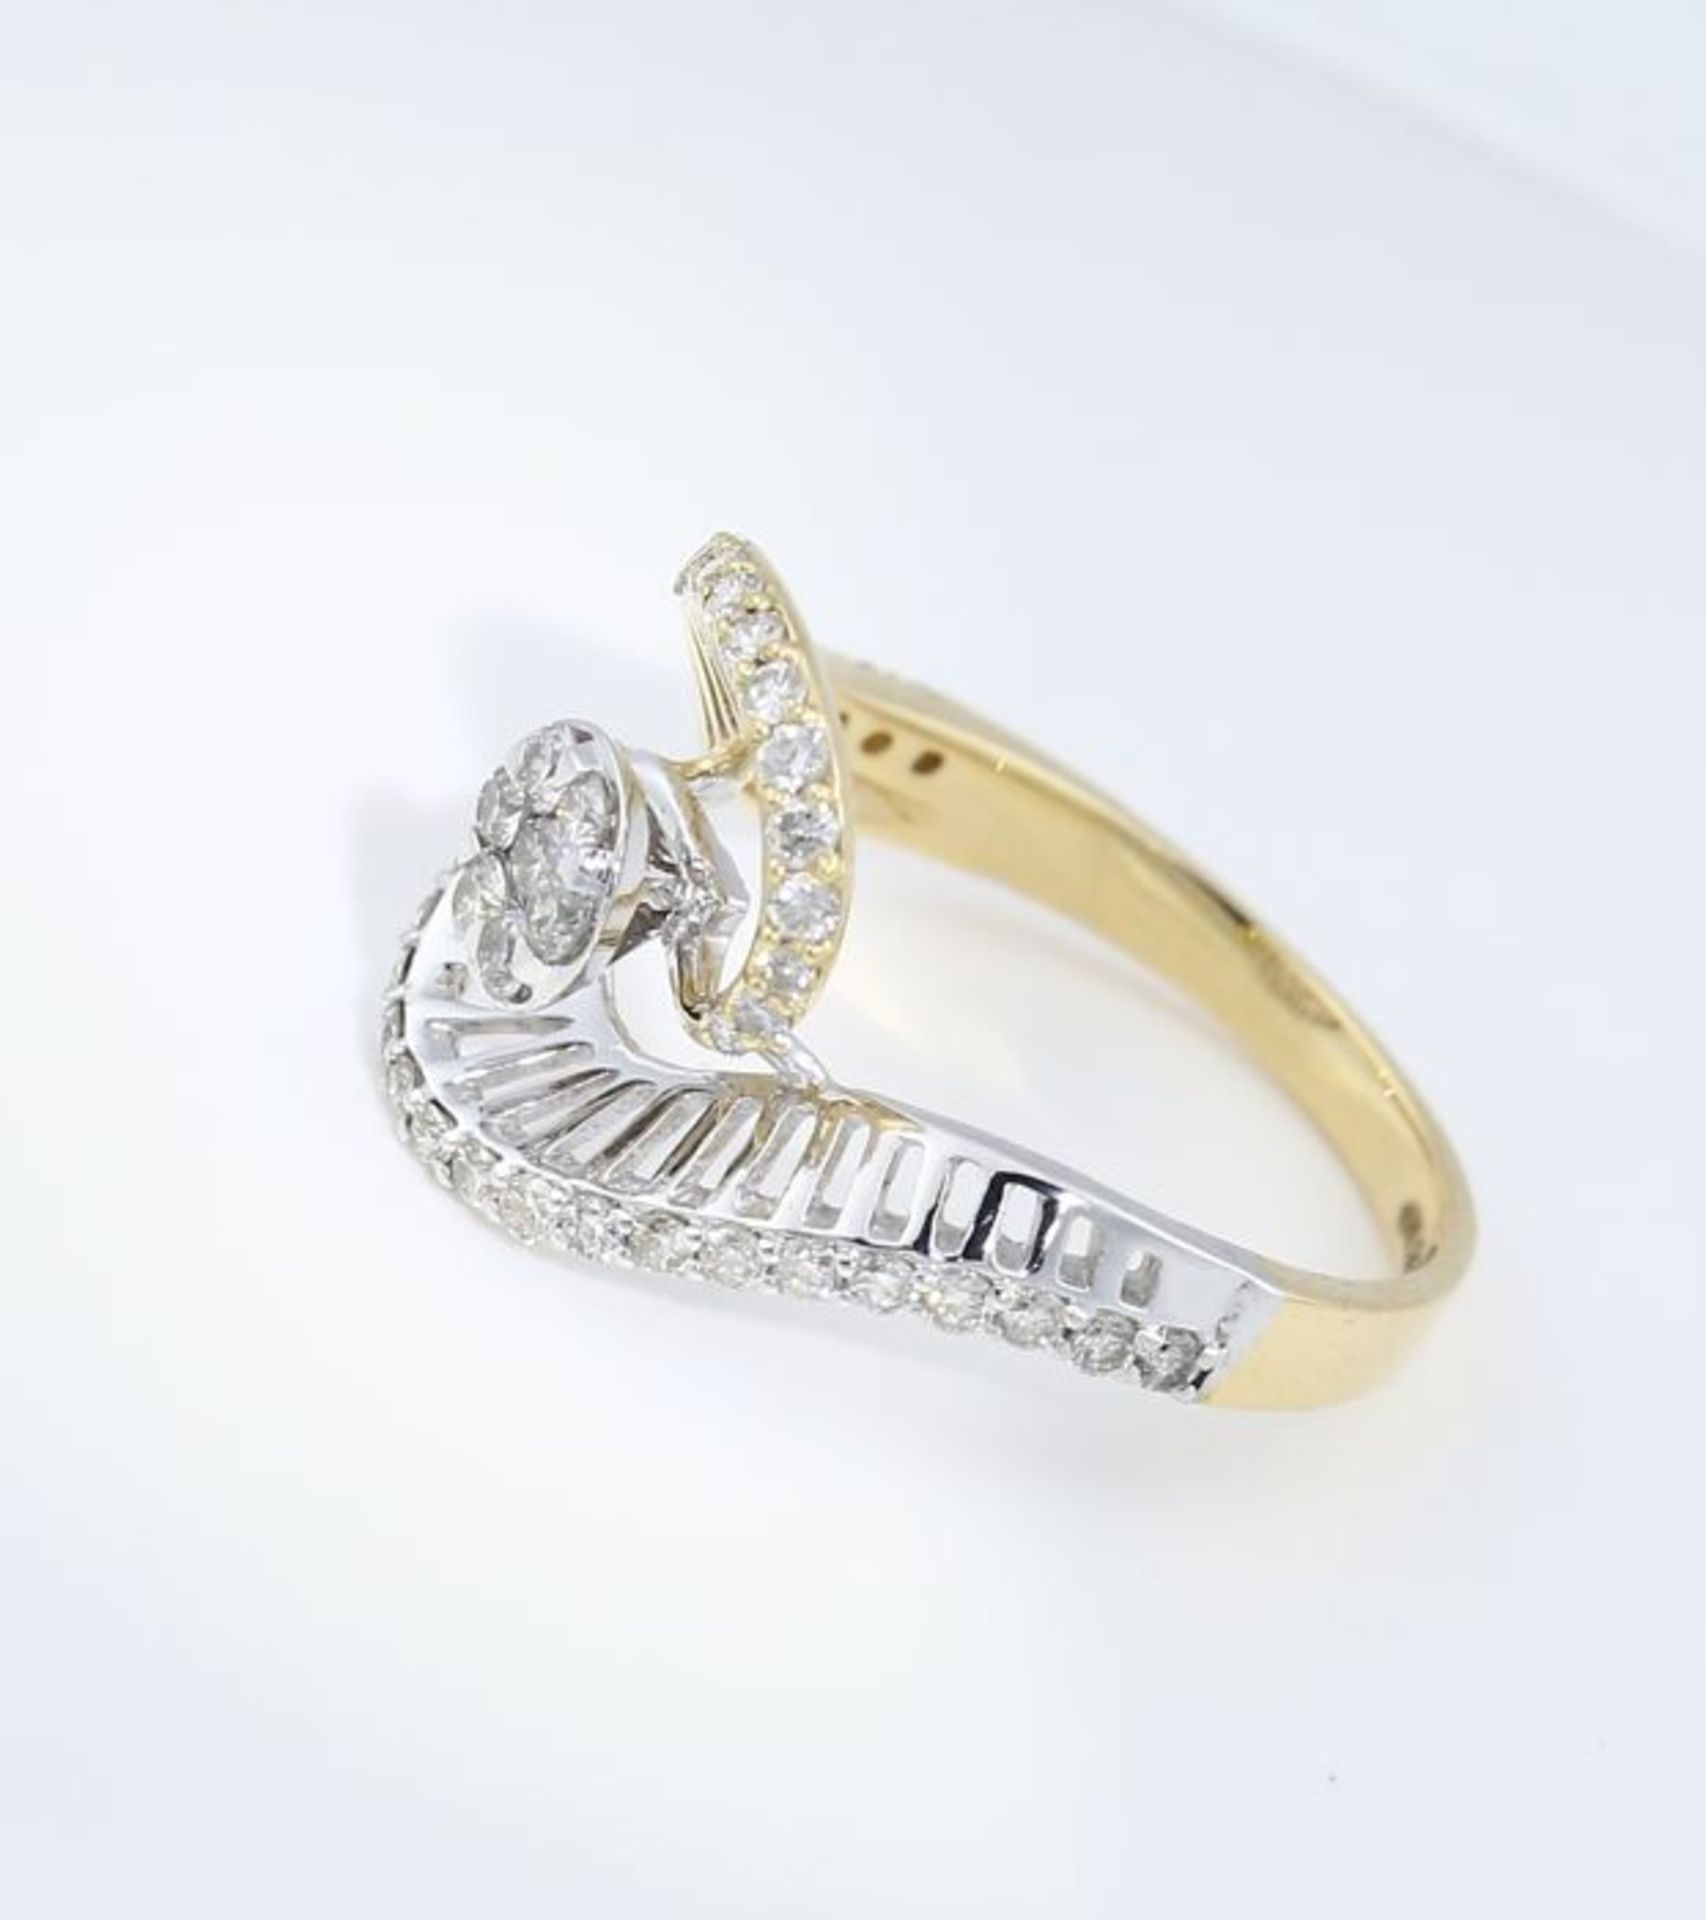 IGI Certified 18 K / 750 Yellow Gold Designer Diamond Ring - Image 7 of 10